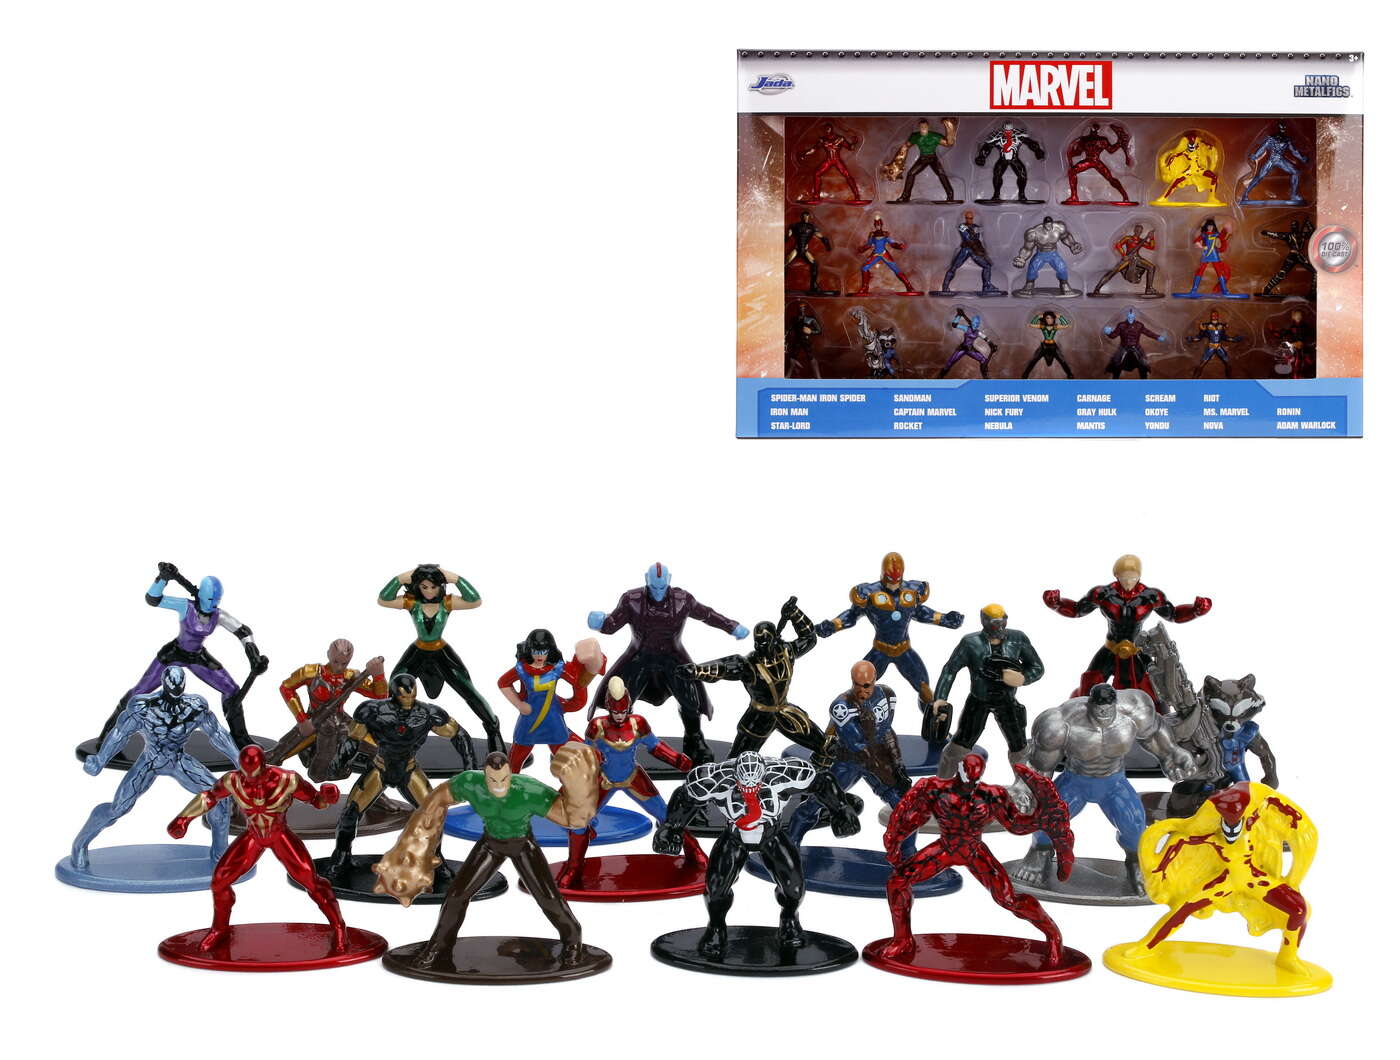 Set 20 de figurine metalice cu eroii marvel si figurina iron man inclusa